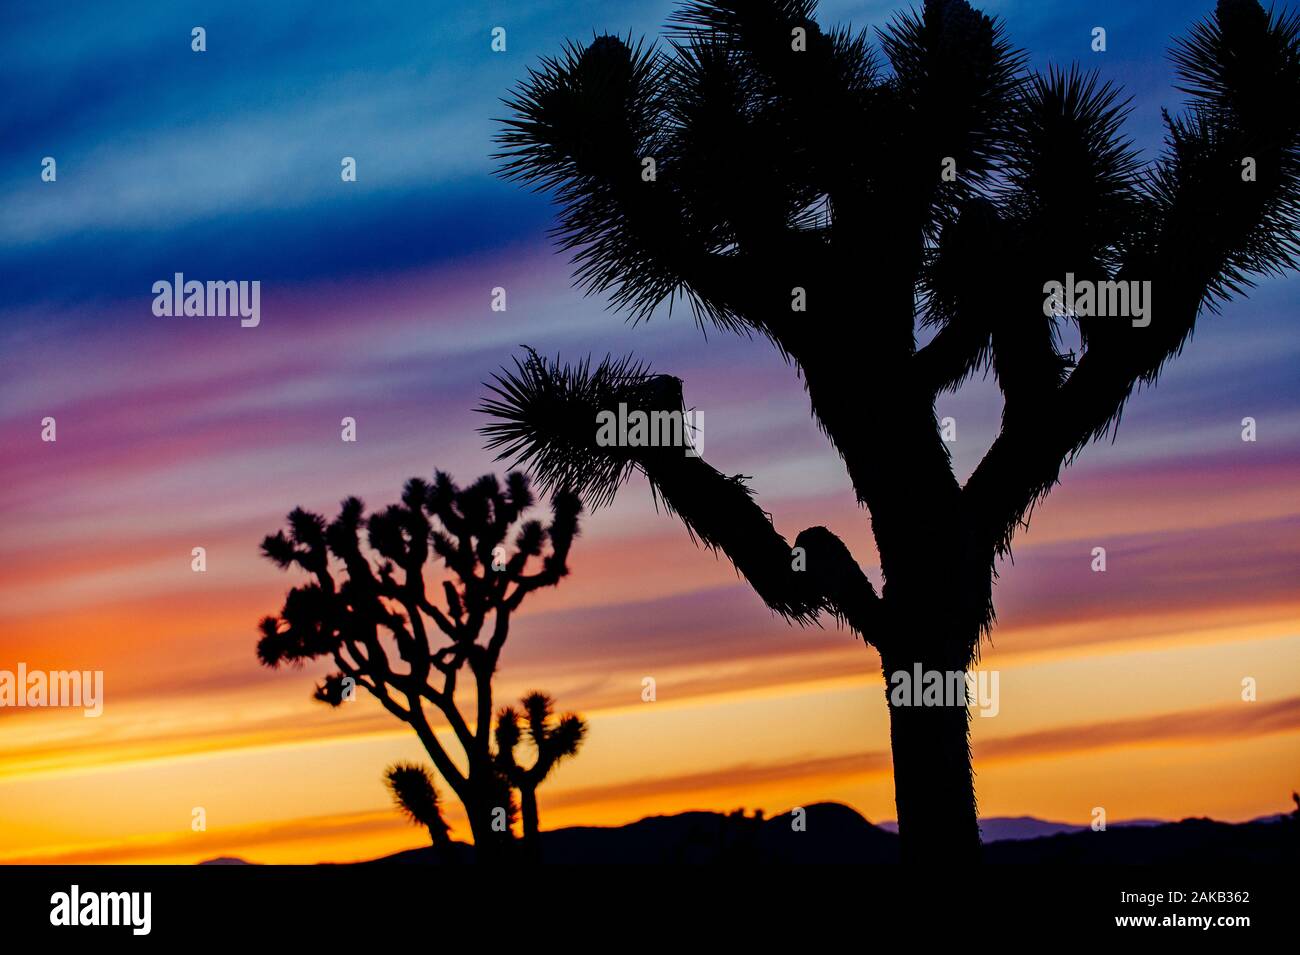 Los árboles Joshua (Yucca brevifolia) siluetas al atardecer en el desierto, California, EE.UU. Foto de stock